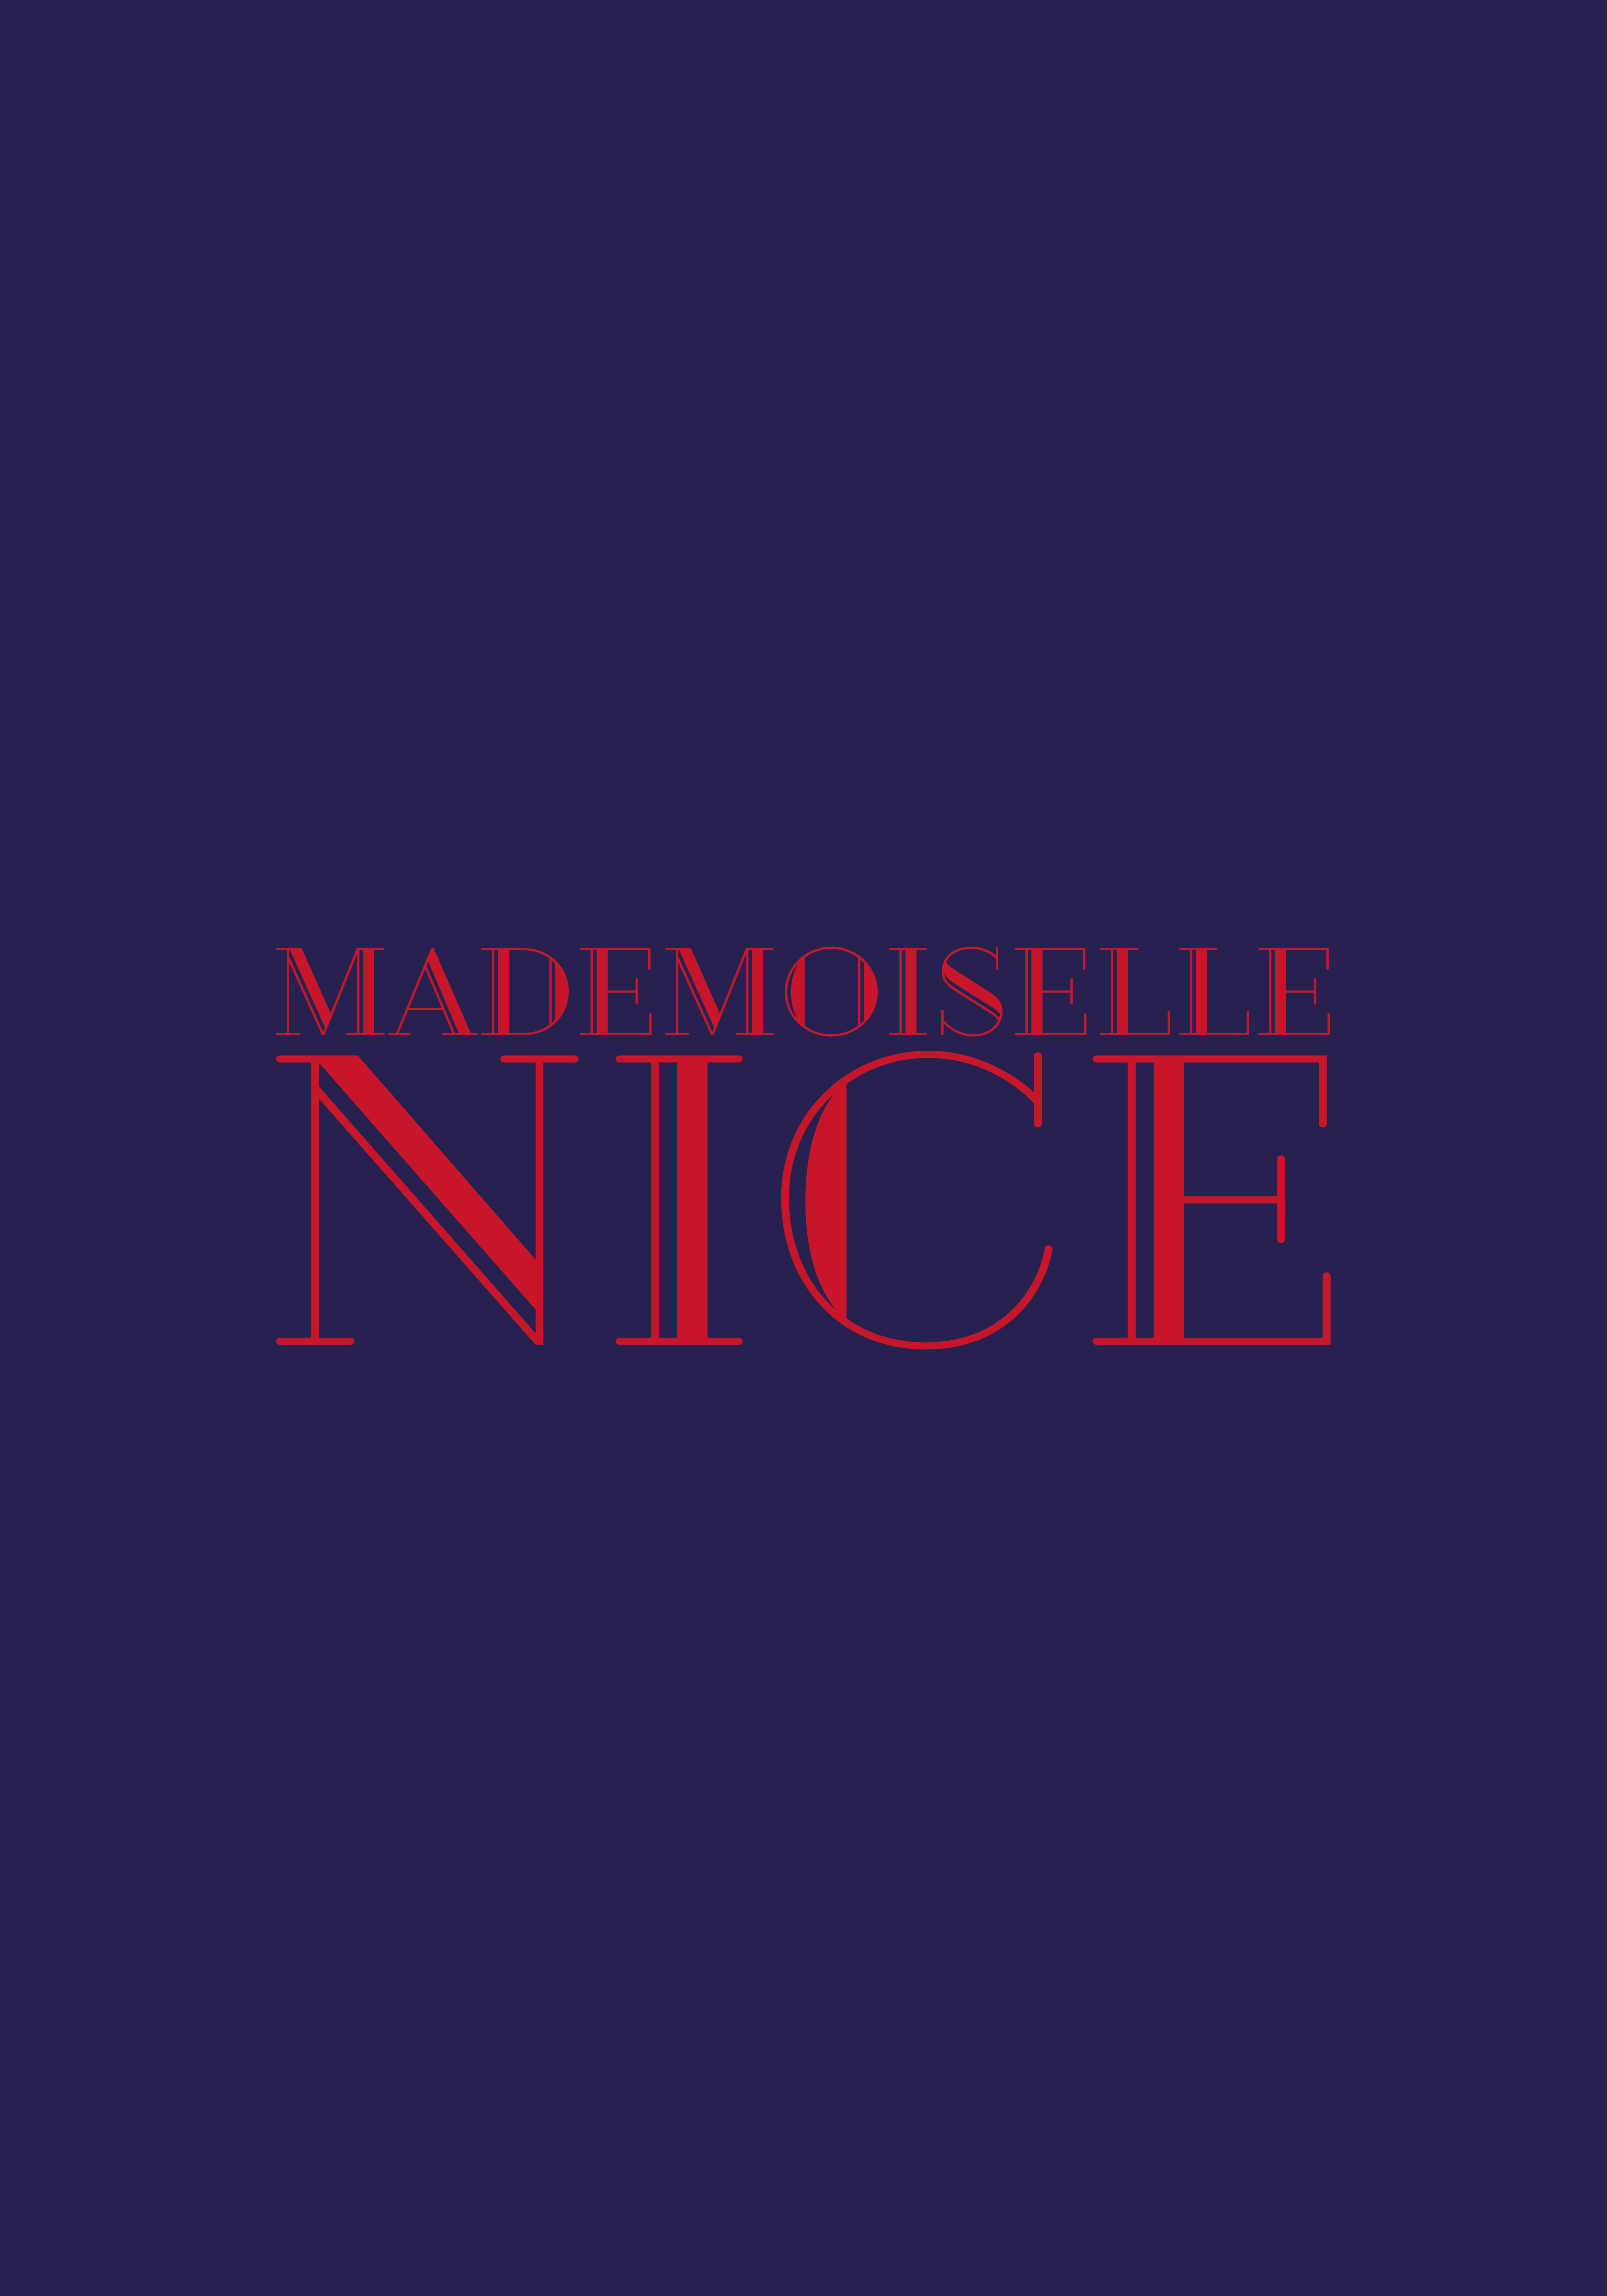 Das Logo von Mademoiselle Nice, das durch die Markenberatung Stuttgart entstand auf violettem Hintergrund.